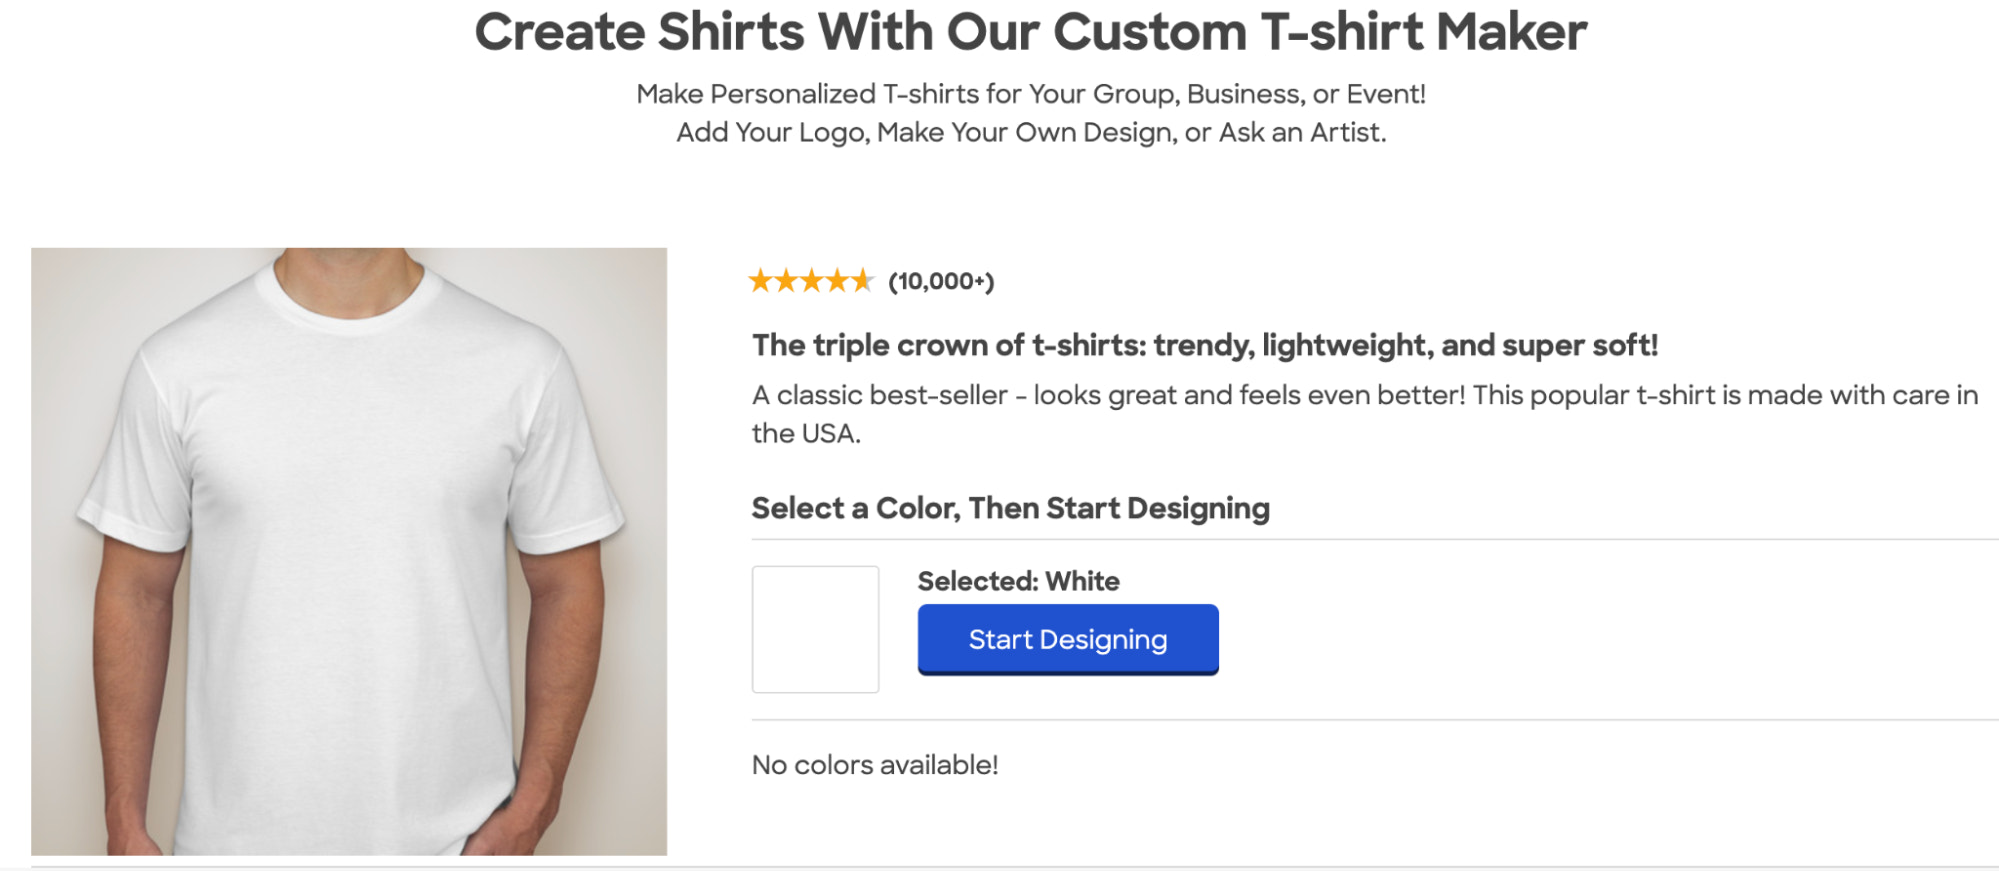 Printed T-shirt Clothing Sleeve, Kaos polos, tshirt, color, active Shirt png